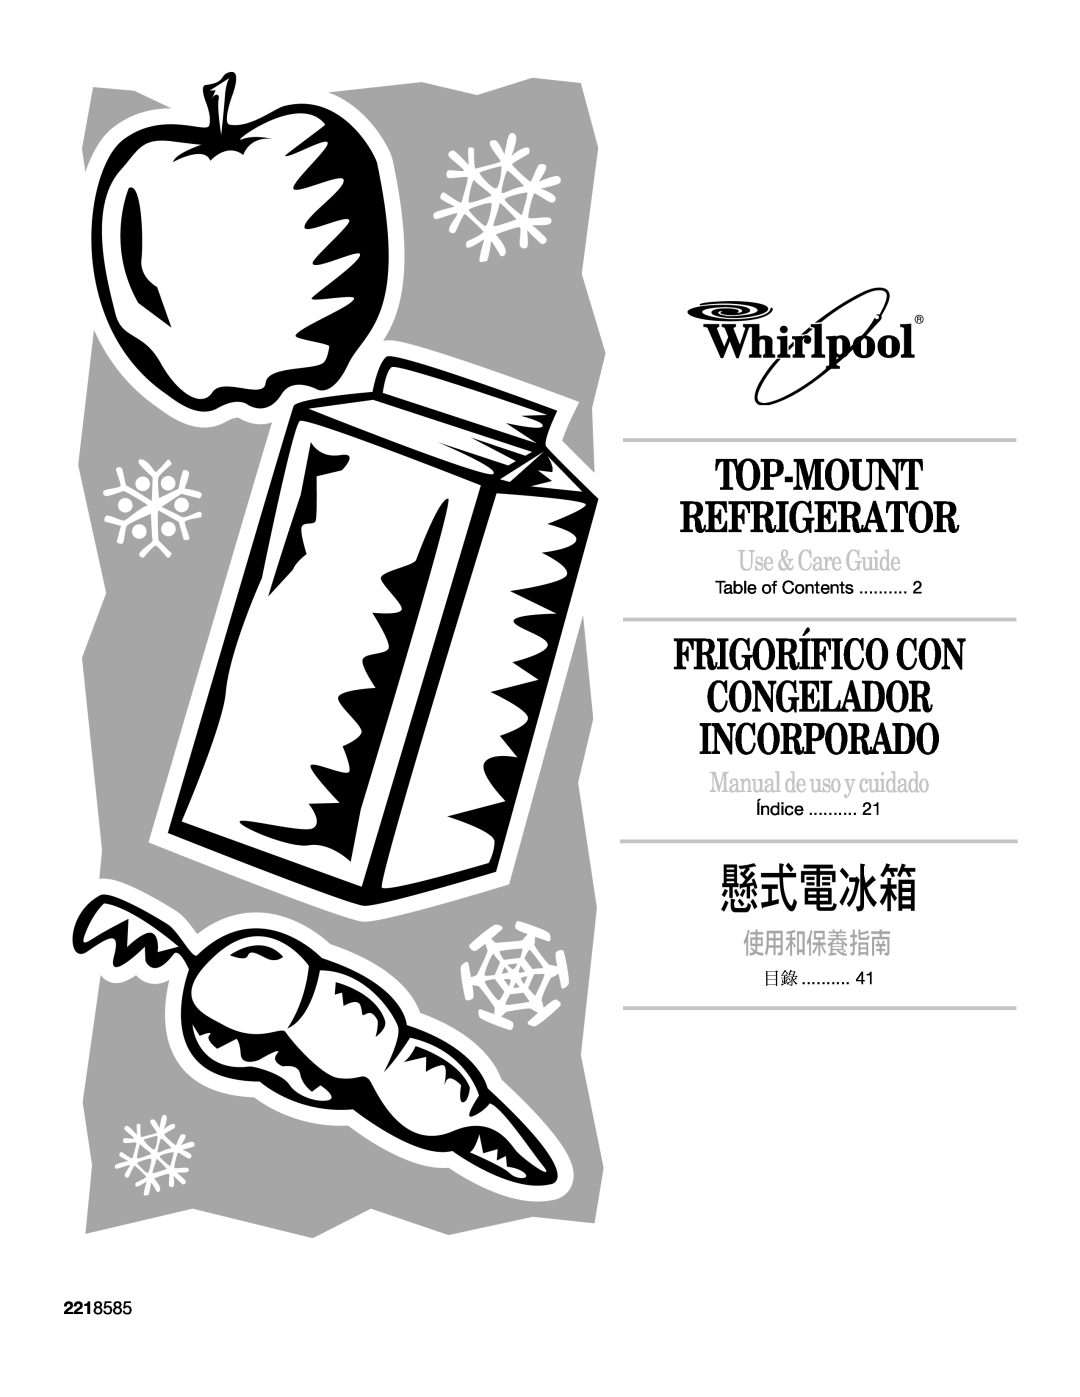 Whirlpool 2218585 manual Top-Mount Refrigerator, Frigorífico Con Congelador Incorporado, Use & Care Guide 